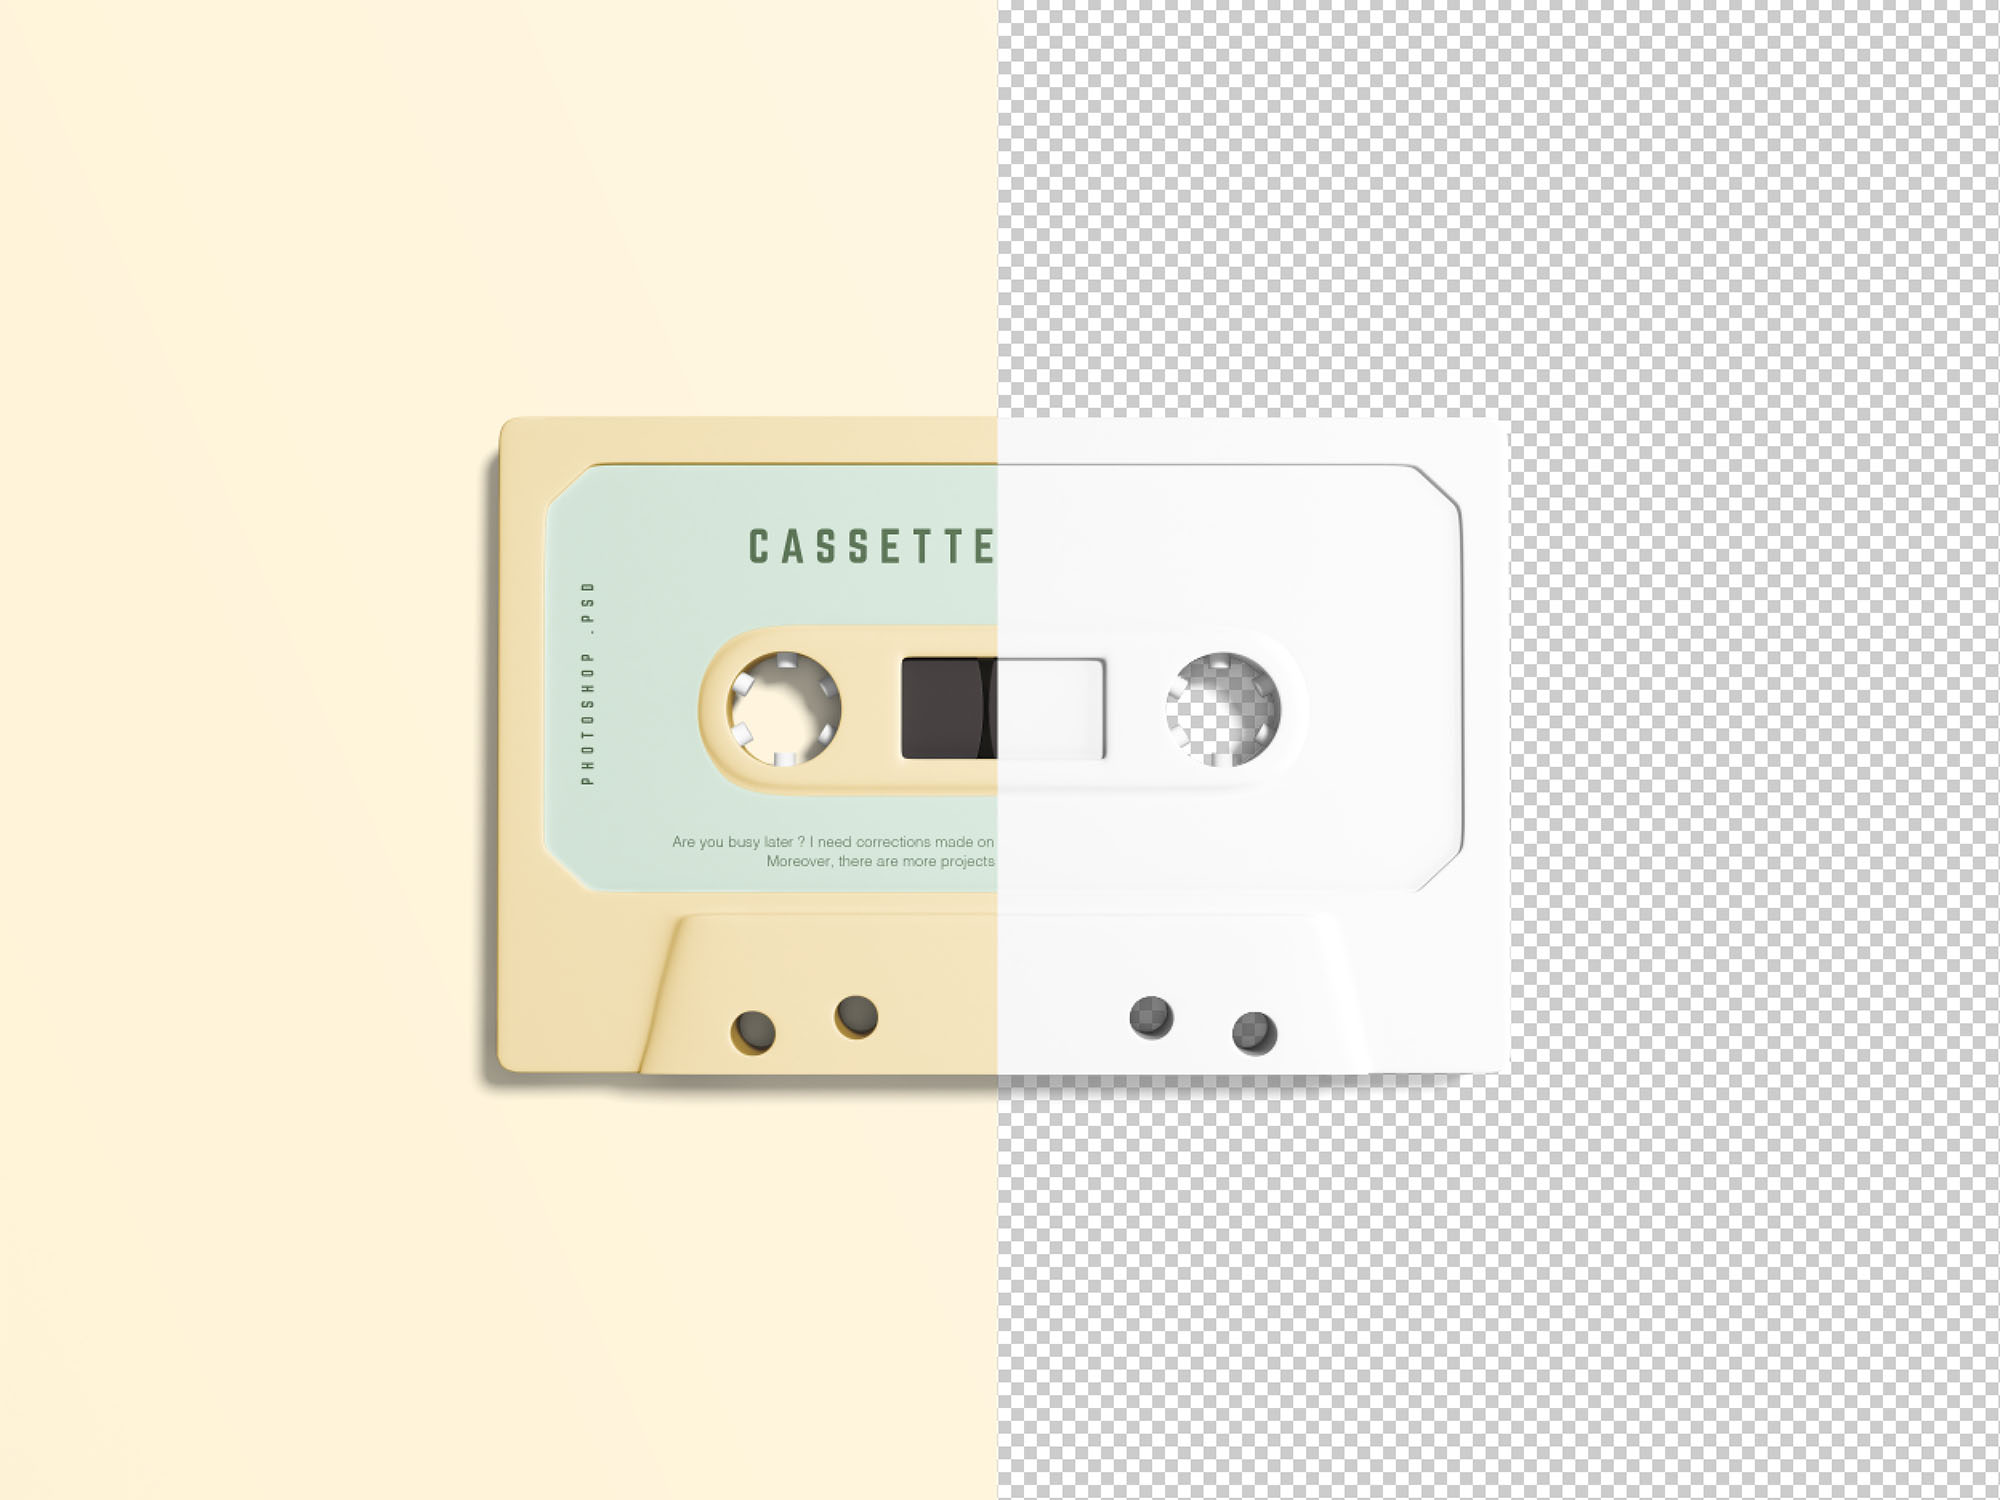 复古音乐磁带外观设计样机模板 Simple Cassette Mockup插图(2)